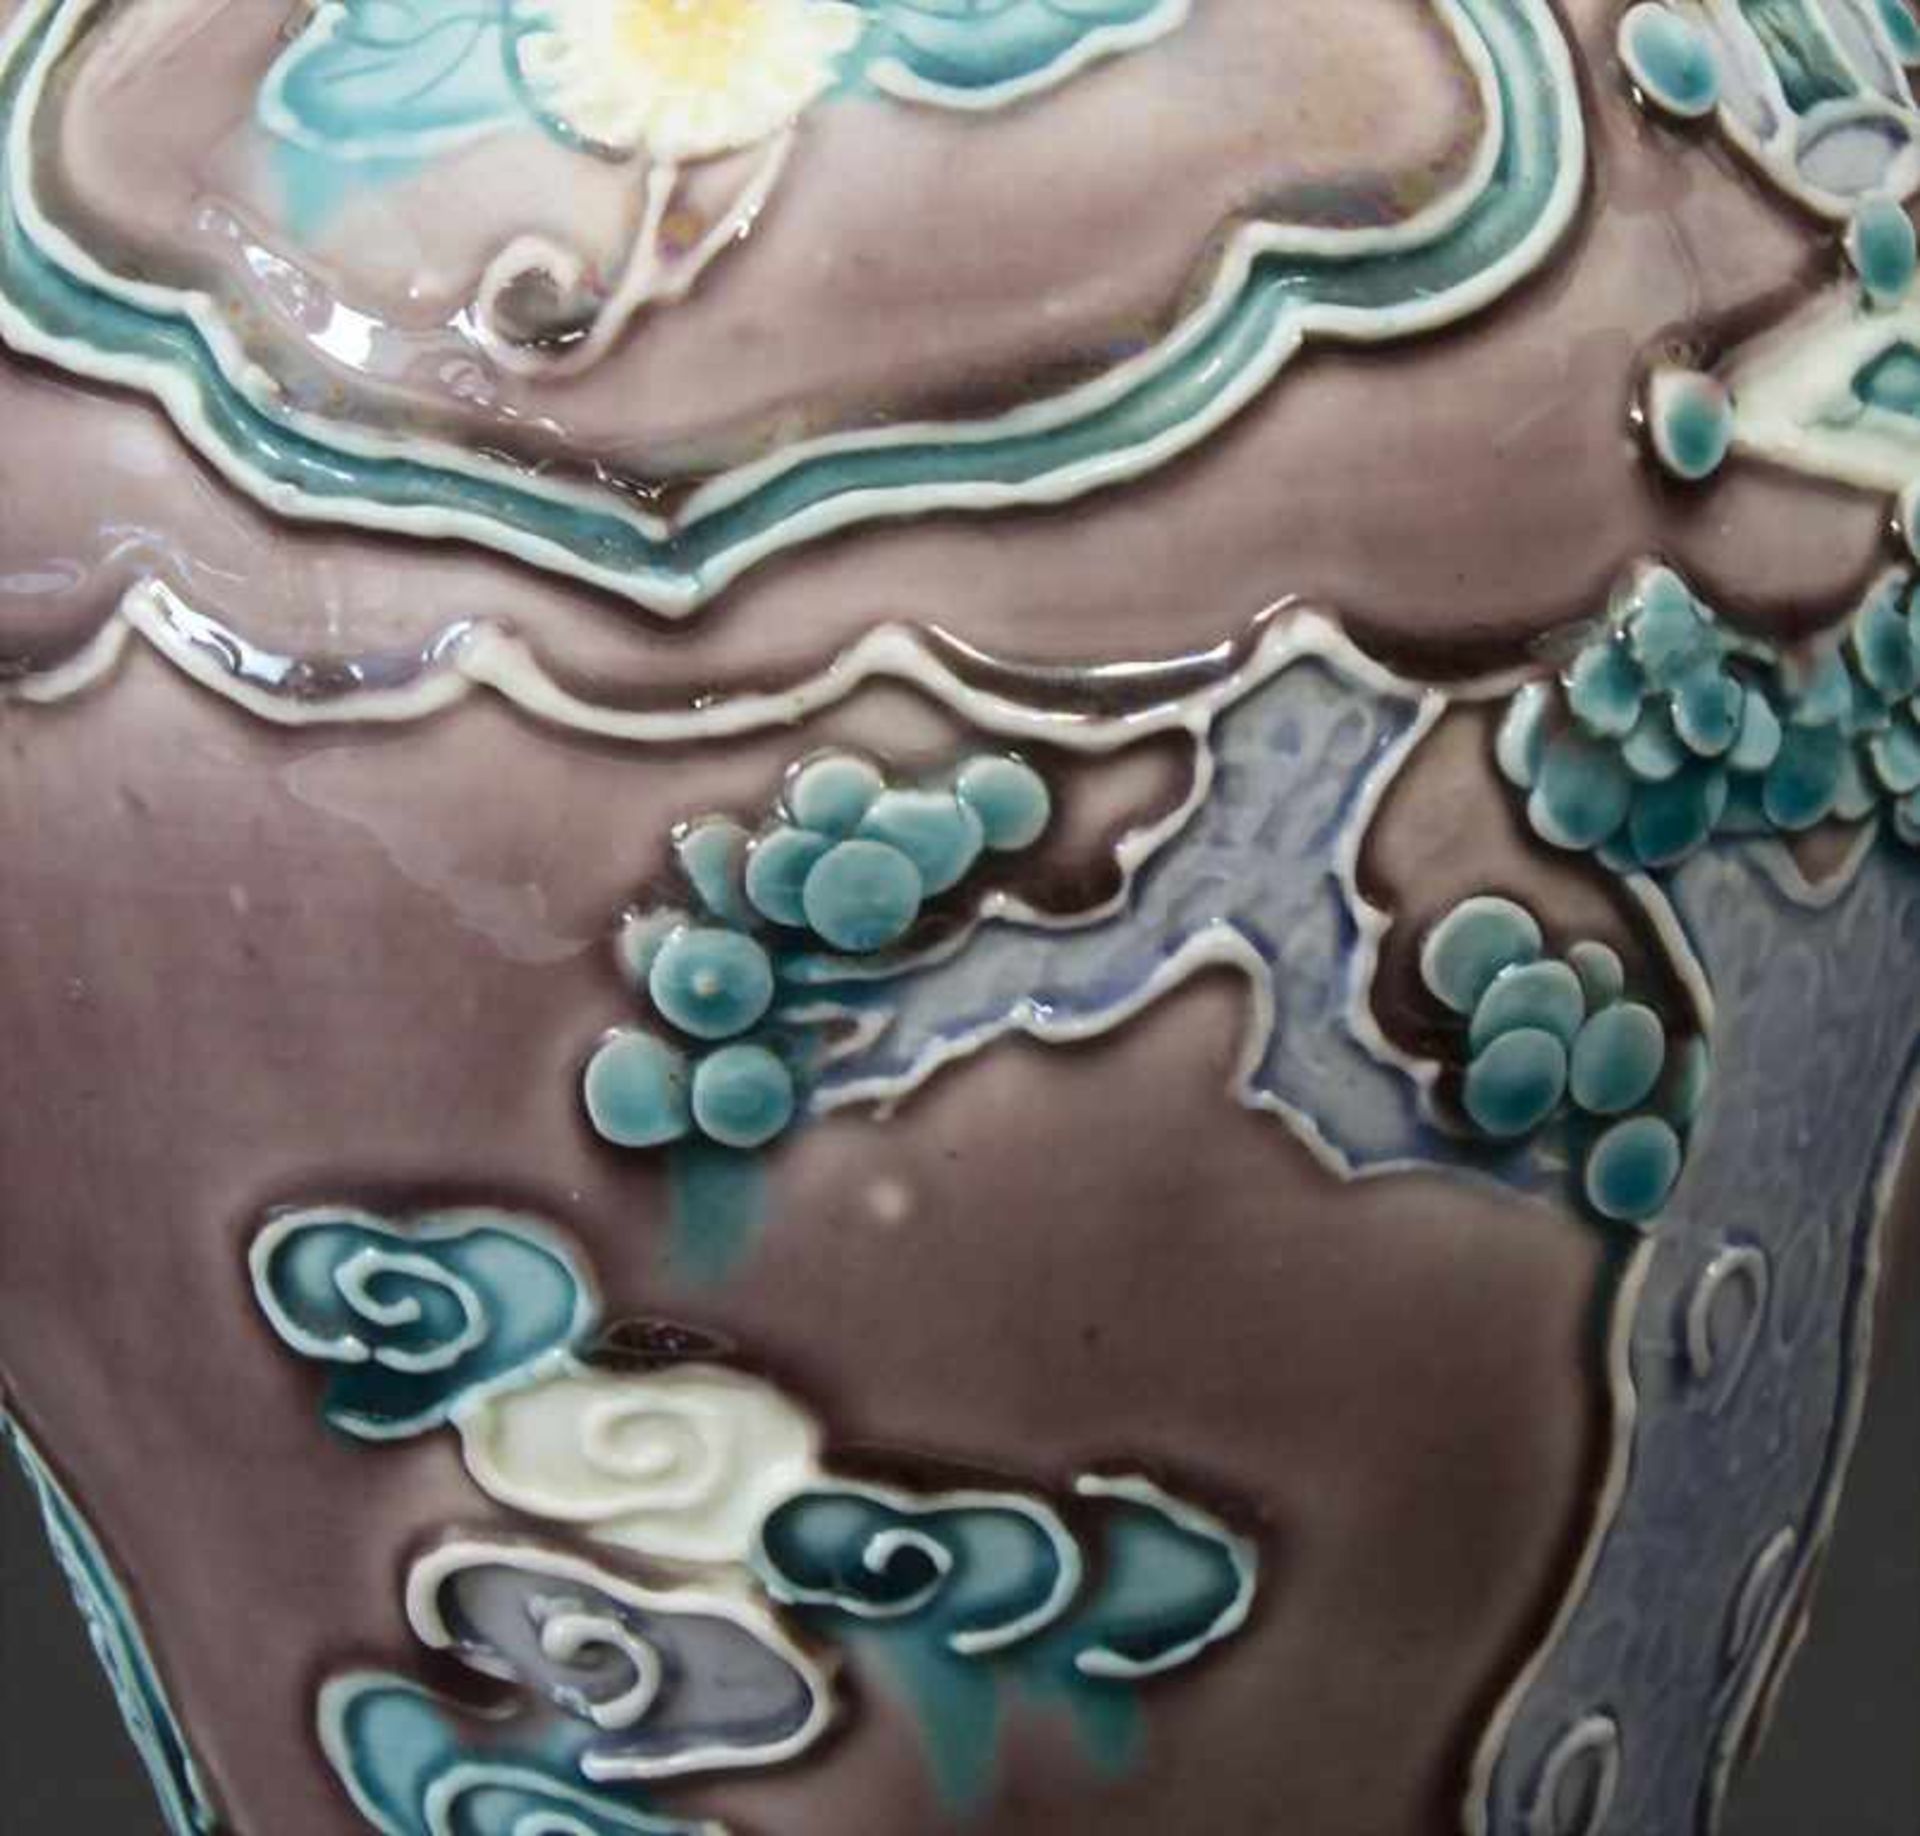 Fahua-Vase, China, wohl 18./19. Jh.Material: Bisquitporzellan, Auflagen in Fahuatechnik, polychrom - Bild 6 aus 7